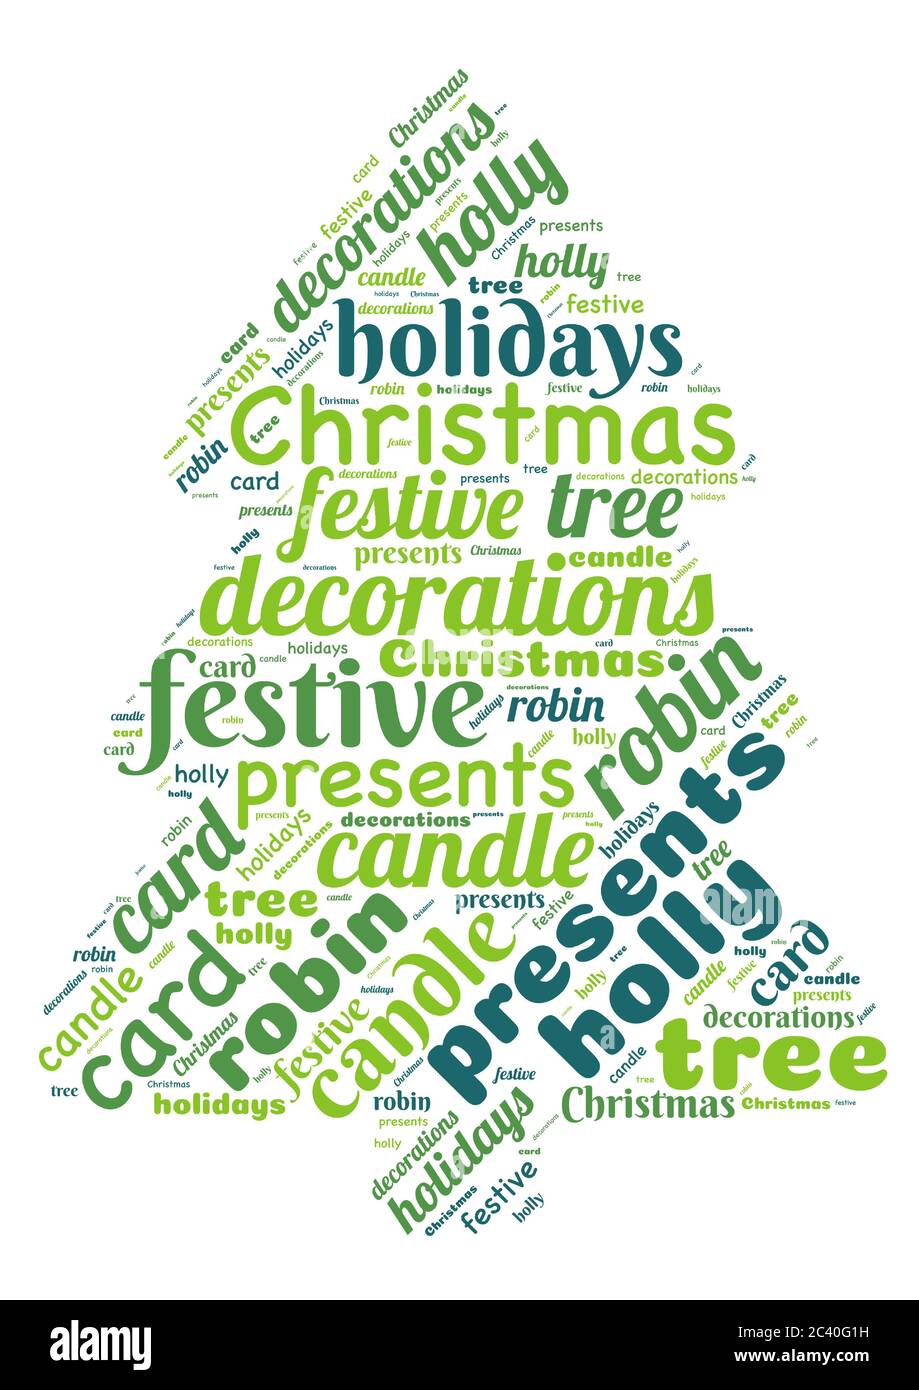 Wortwolke mit Wörtern in einer Baumform, die Weihnachten darstellen Stock Vektor